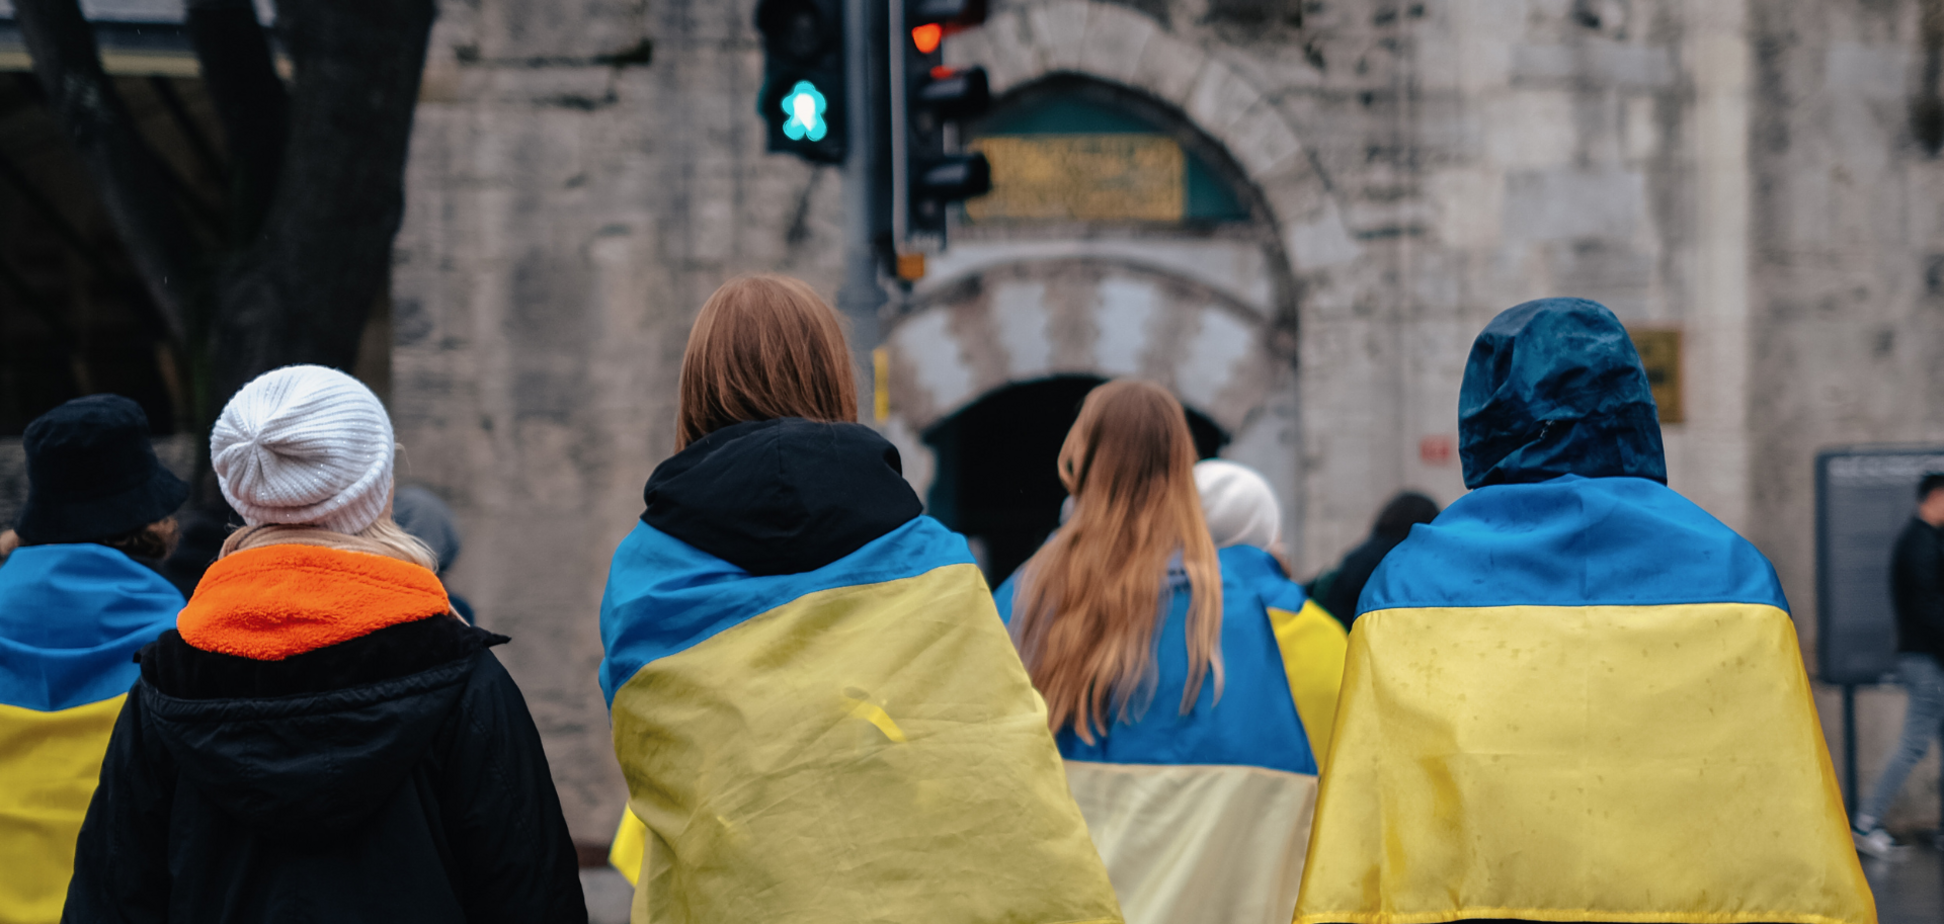 Думки розділилися: опитування показало, як змінилося ставлення чехів до біженців із України